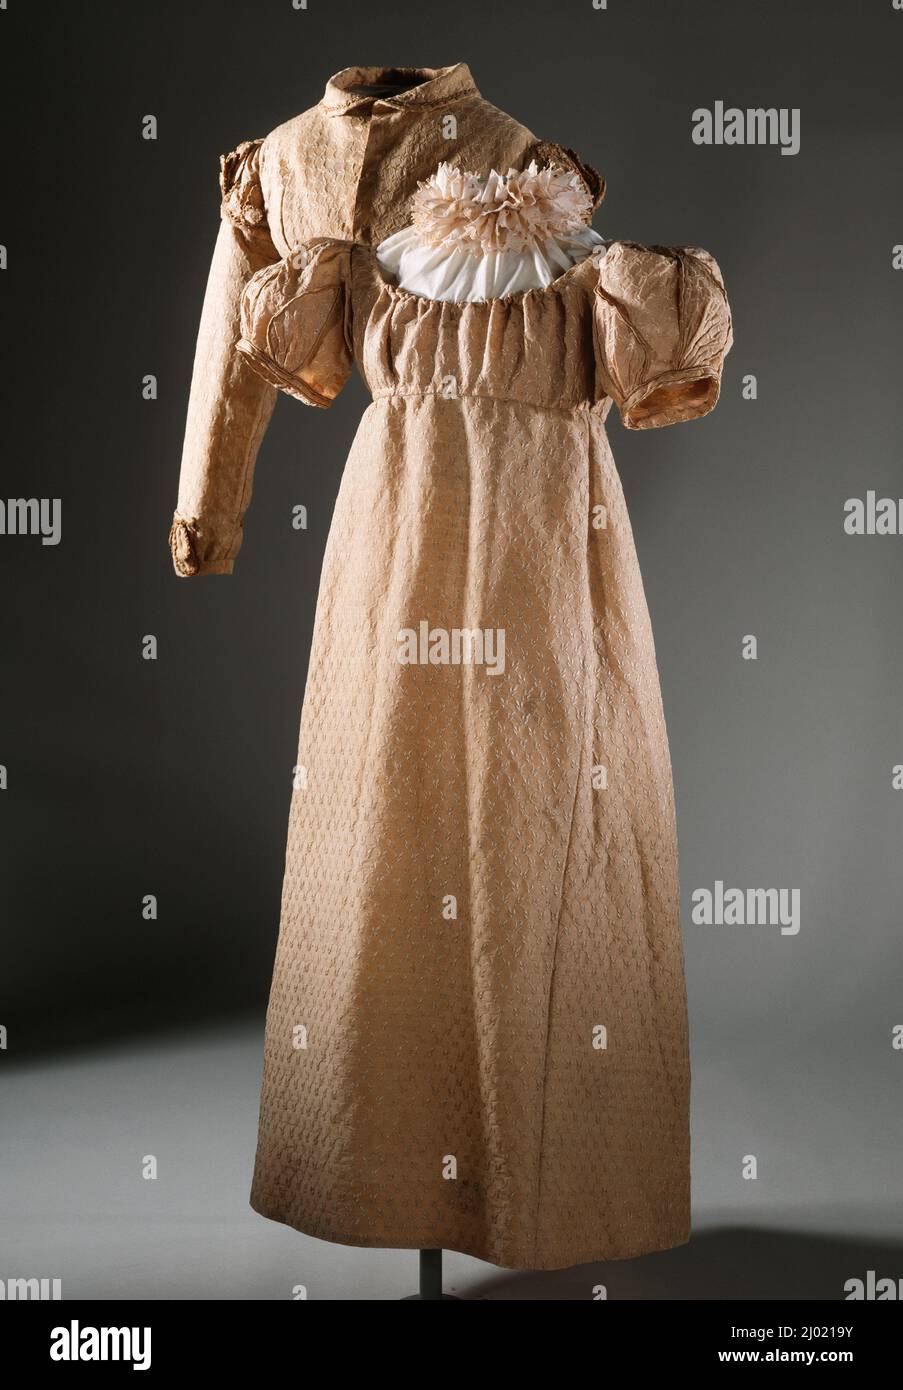 Robe pour fille et veste Spencer. Angleterre, vers 1817. Costumes; ensembles. Tissage Uni en laine et soie avec motif de chaîne supplémentaire en soie et cordon de soie Banque D'Images